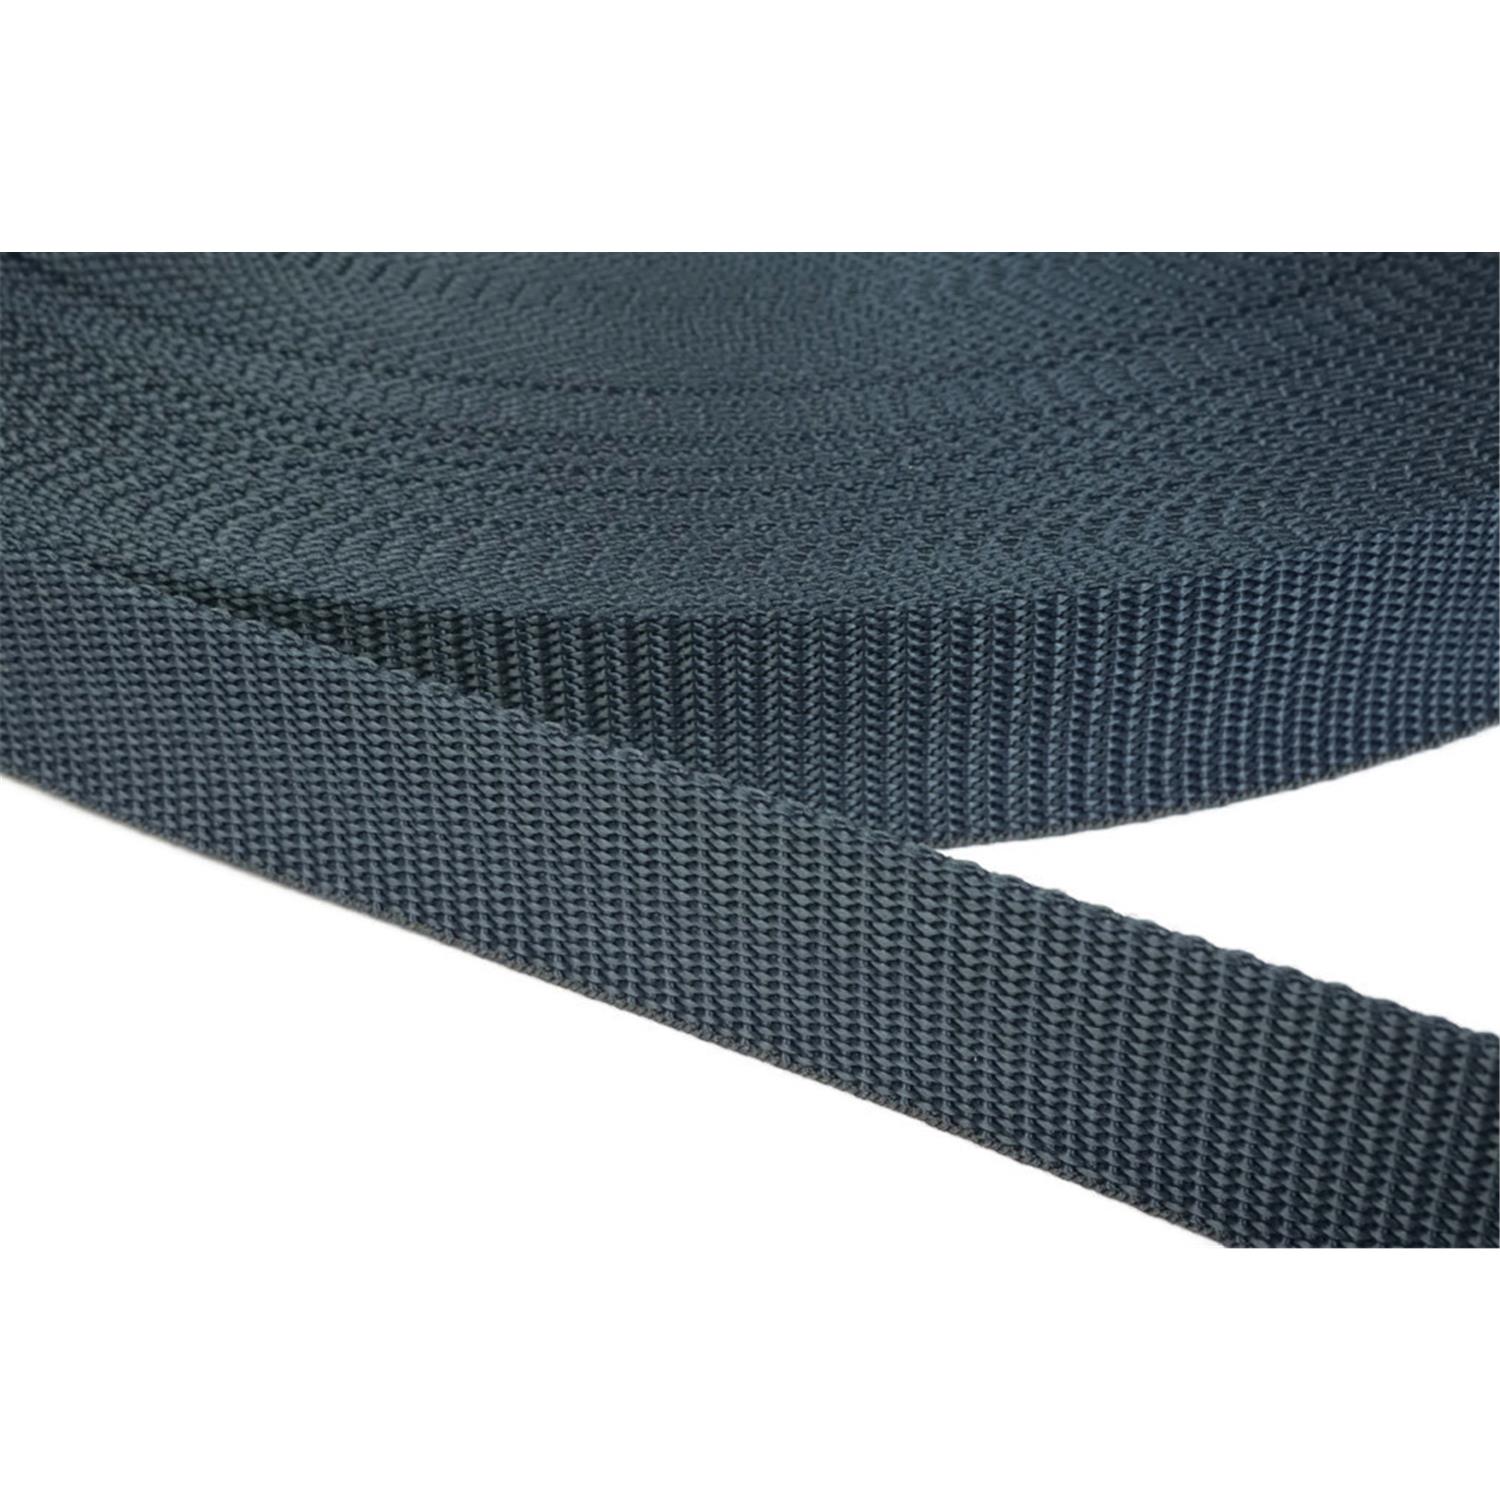 Gurtband 20mm breit aus Polypropylen in 41 Farben 40 - dunkelgrau/blau 12 Meter